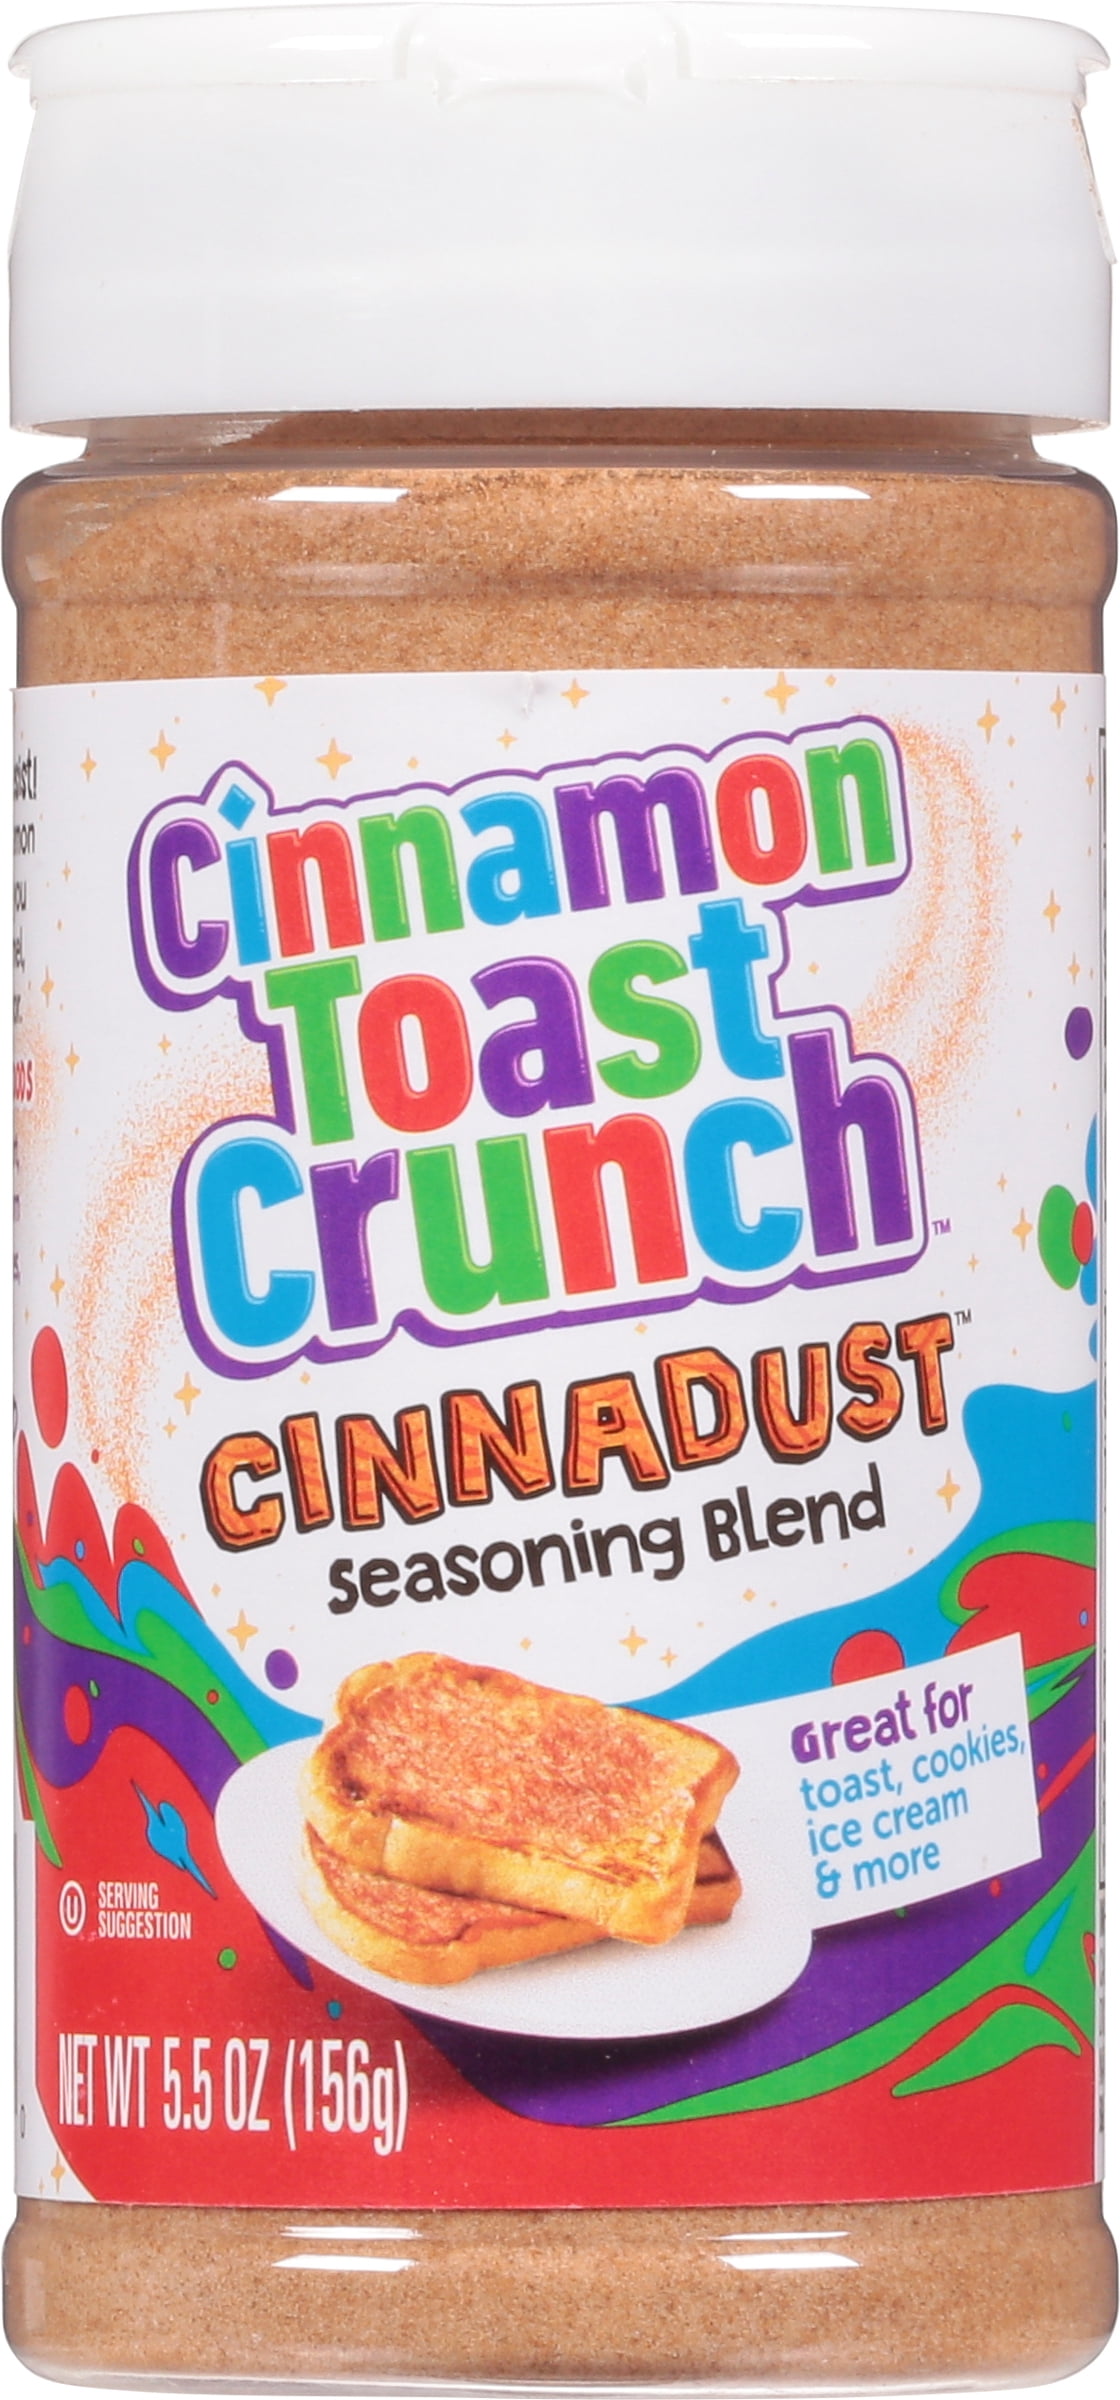 Try a sprinkle of Cinnamon Toast Crunch Cinnadust seasoning